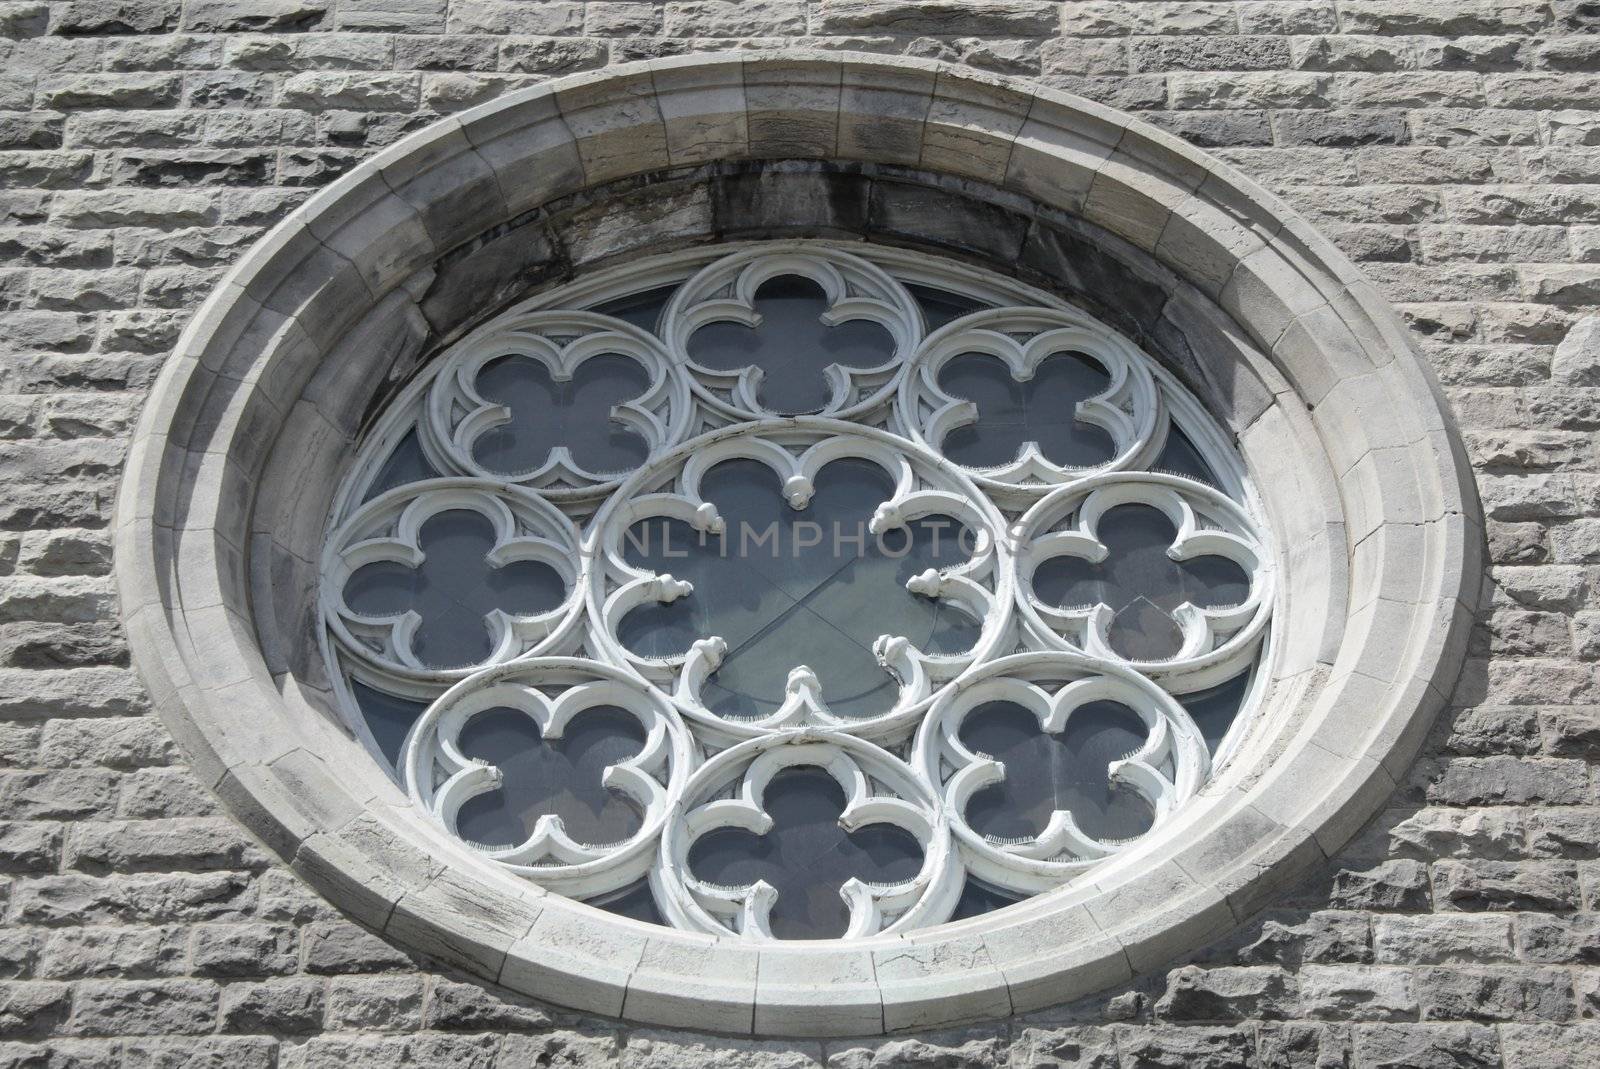 Ornamental window of a Catholic church.